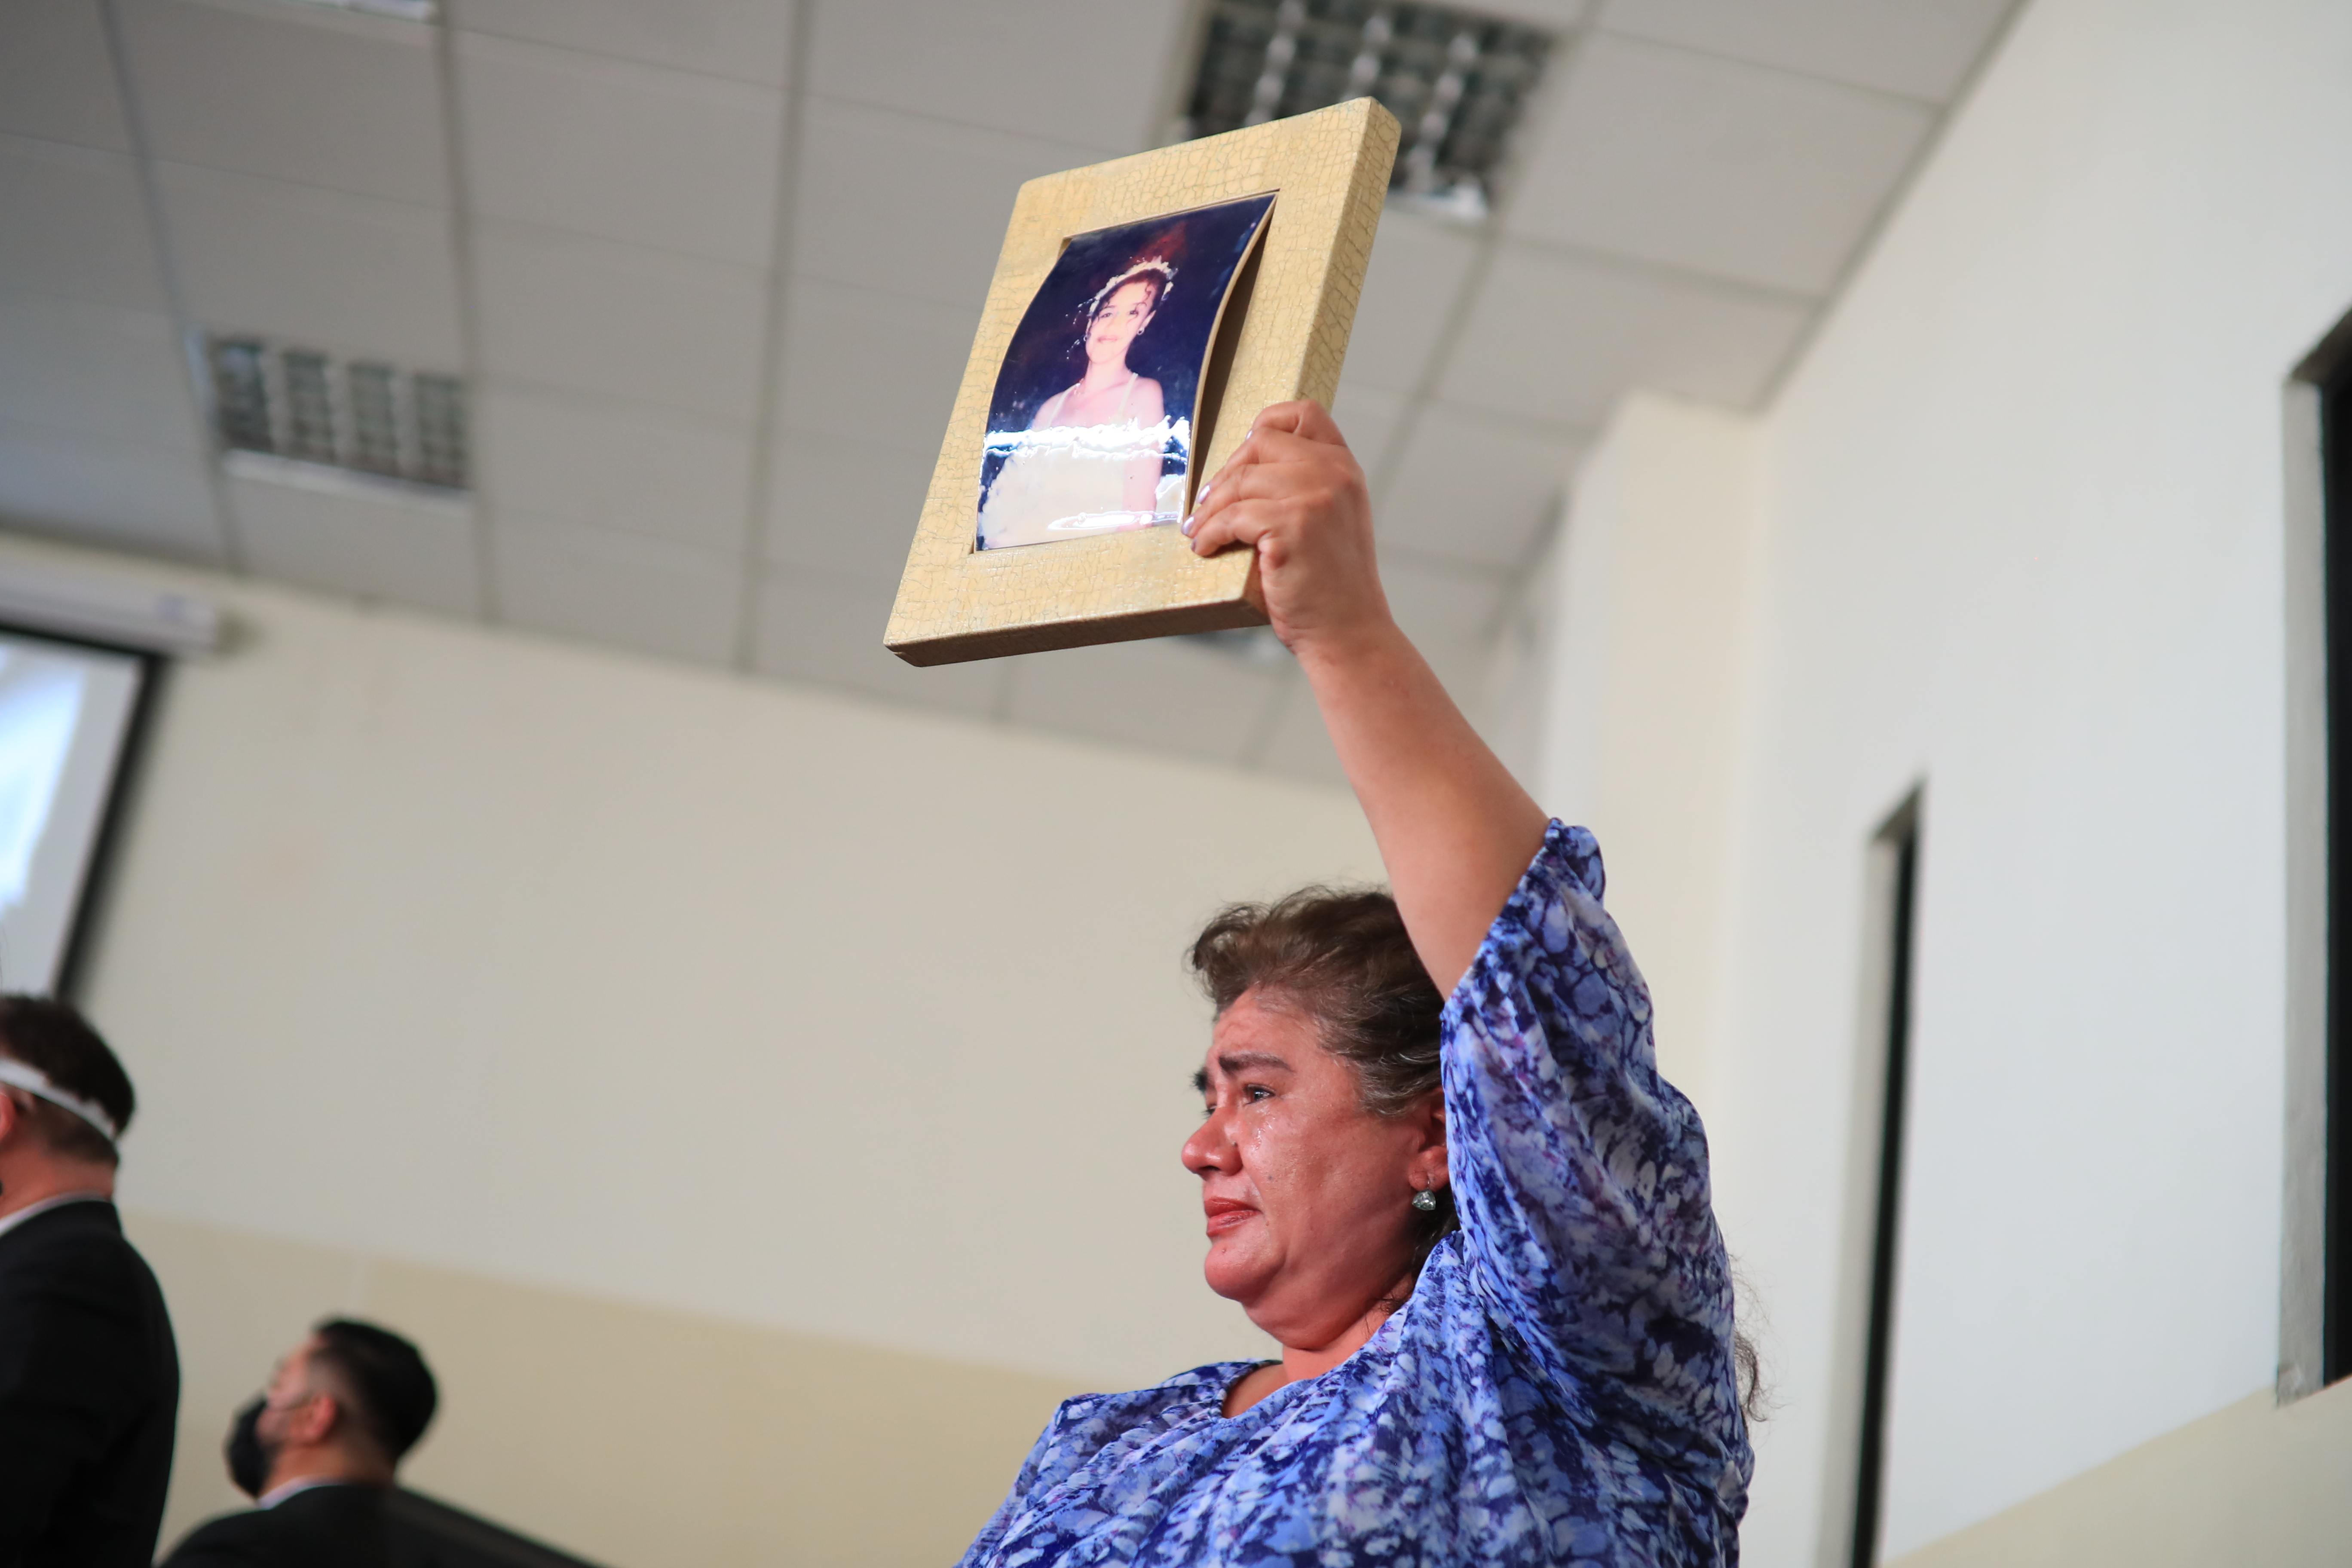 La madre de María Isabel Véliz Franco palpó la justicia con la resolución del Tribunal A de Mayor Riesgo que condenó a Gustavo Adolfo Bolaños Acevedo en marzo del 2021. (Foto Prensa Libre: Carlos Hernández)